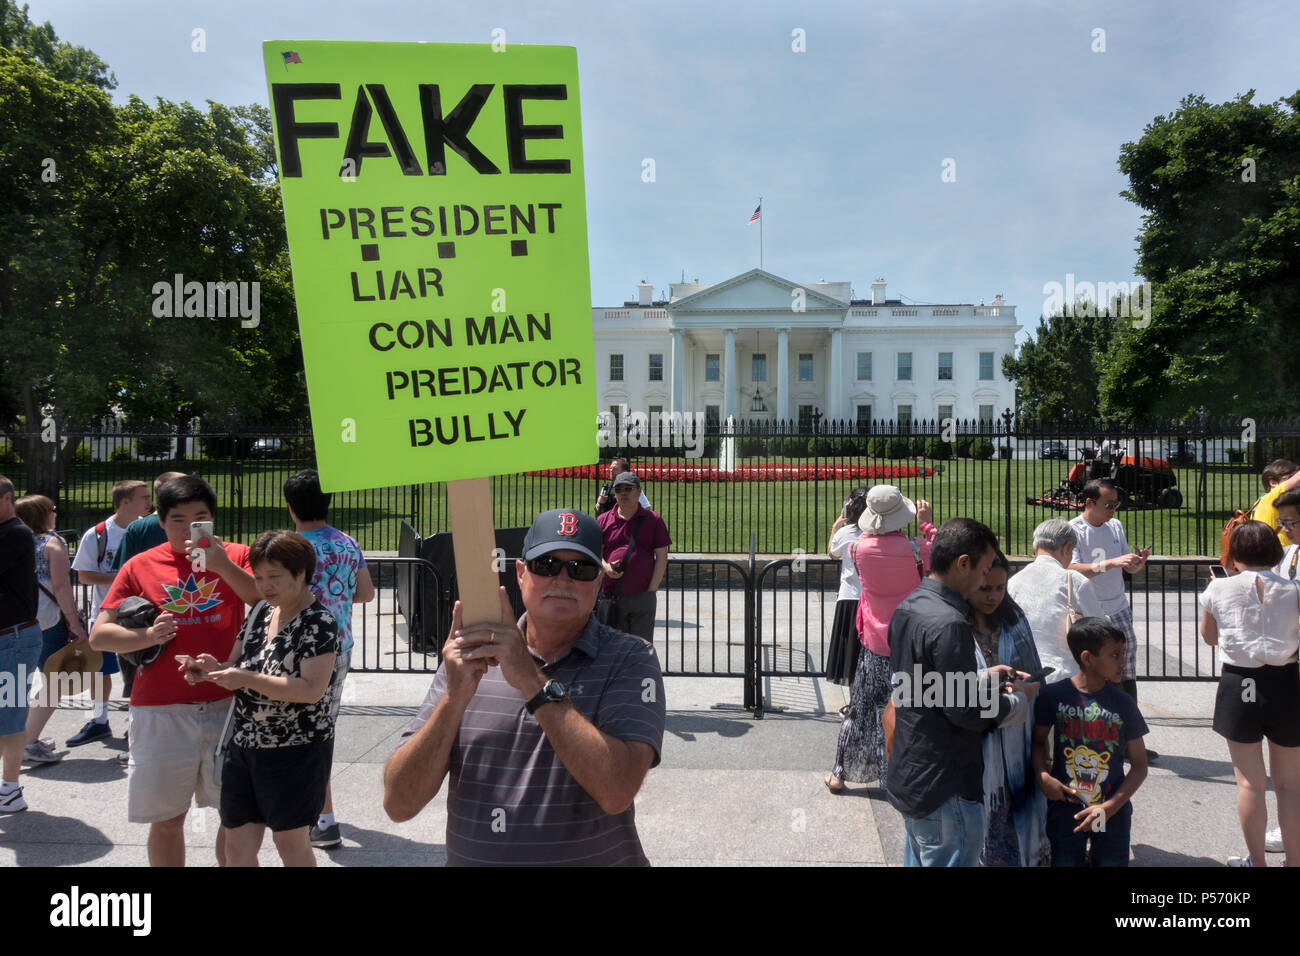 Anti-Trump picchetto alla Casa Bianca; targhetta indicante il Presidente Trump's caratteristiche: bugiardo, con l'uomo, predator, bully. Giugno 25, 2017. I turisti nelle vicinanze Foto Stock